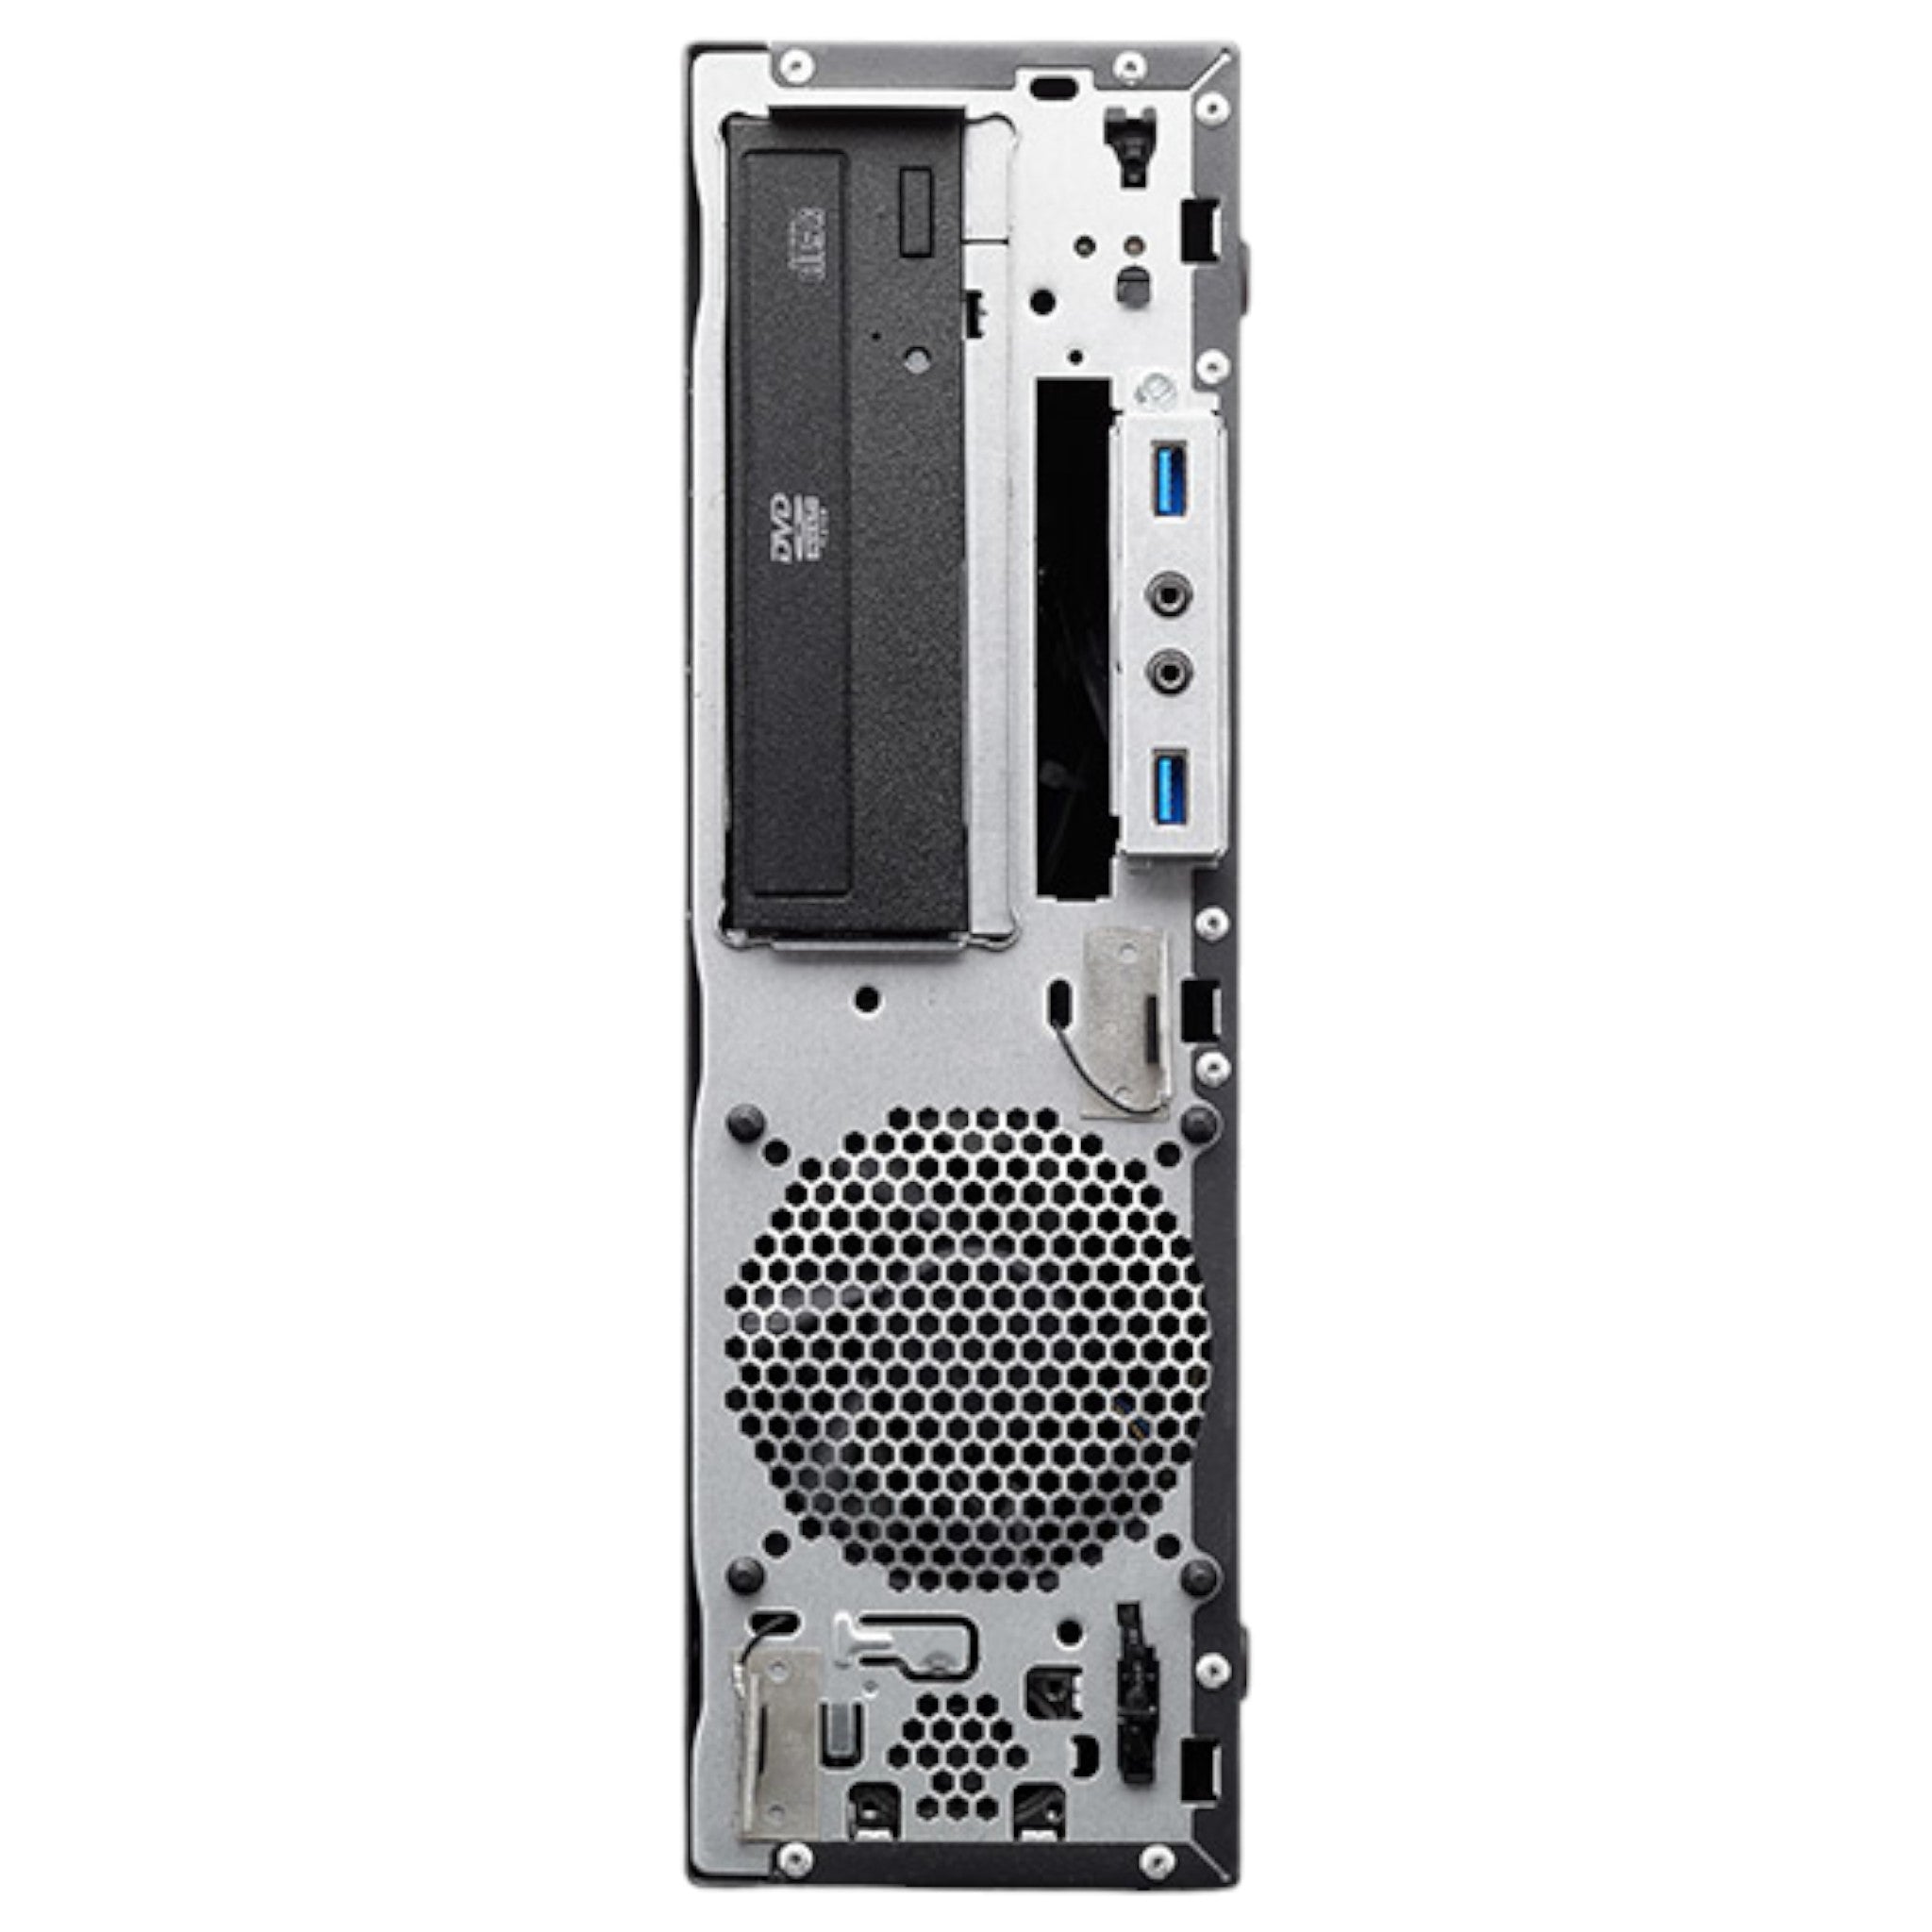 Lenovo ThinkCentre M83 SFF | G3220 | 4 GB | 500 GB HDD | DVD/RW - computify